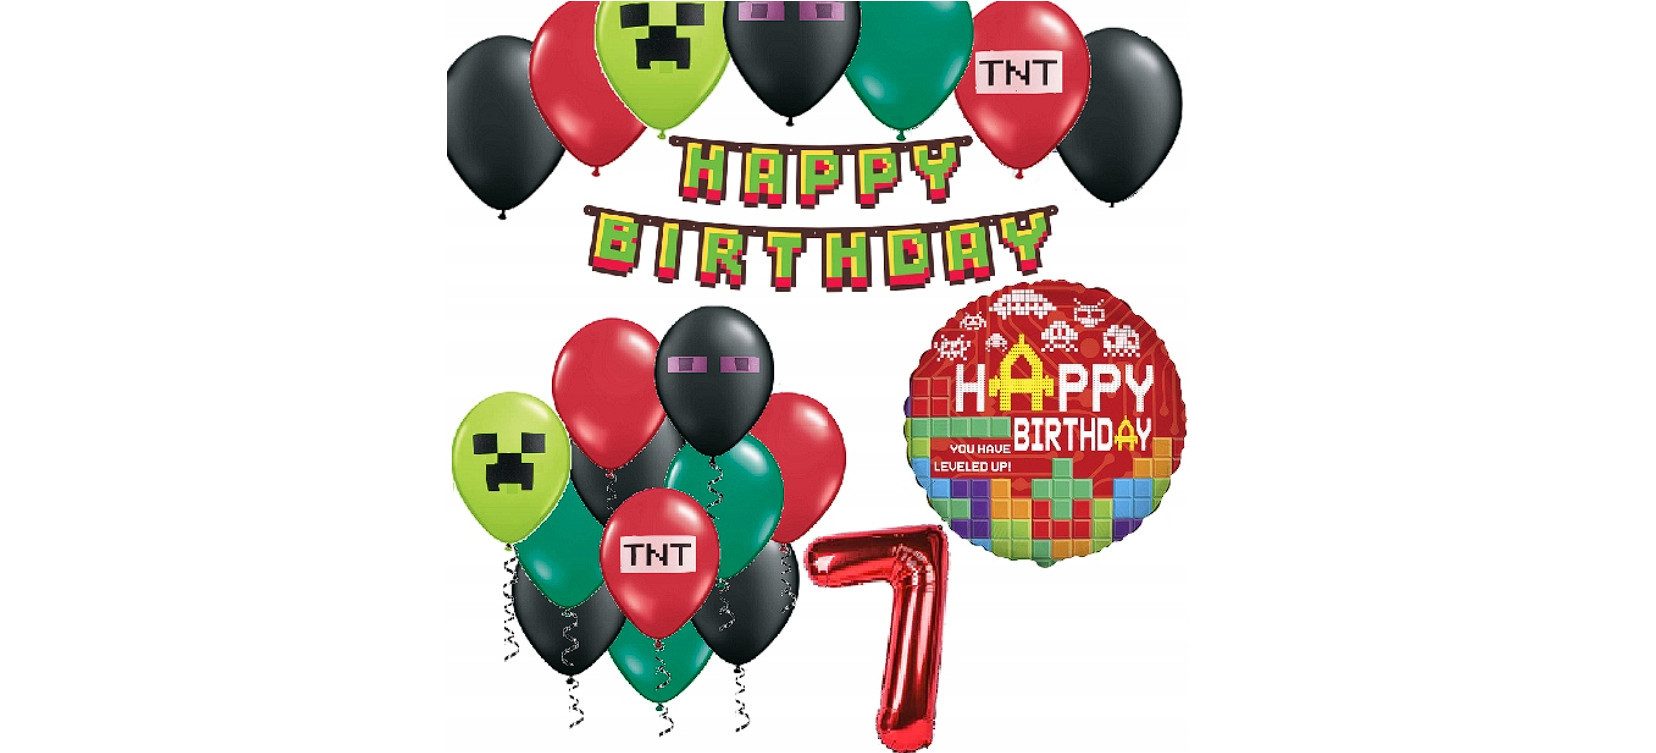 Festivalartikel Luftballon Tolles Geburtstagsset für 7-Jährige - MINECRAFT TNT GAME Motiv